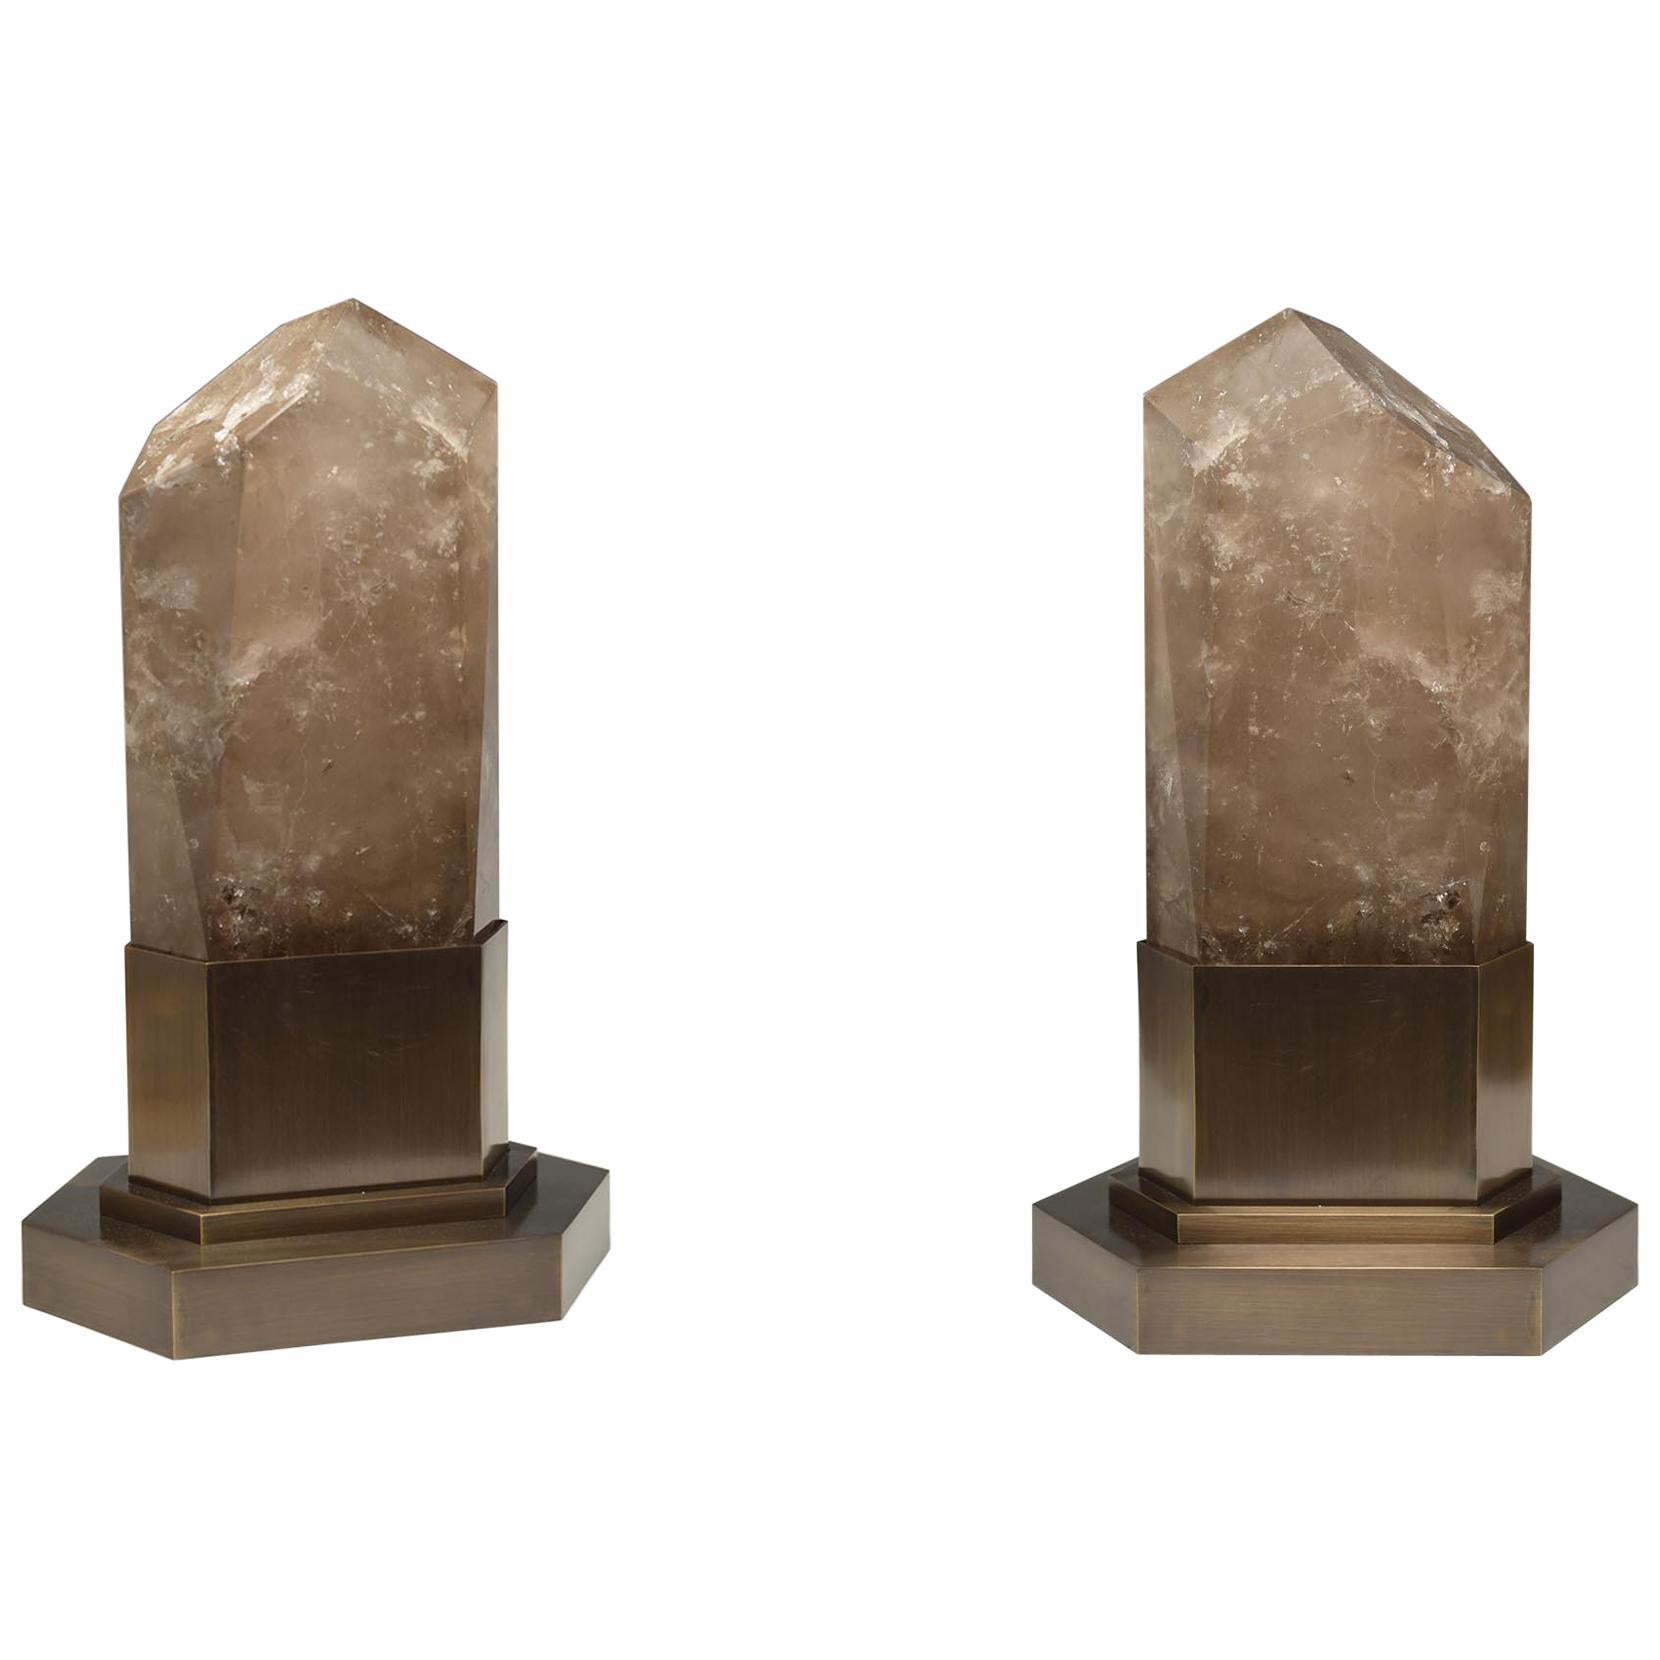 Gruppe von zwei Obeliskenleuchten aus rauchigem Bergkristall